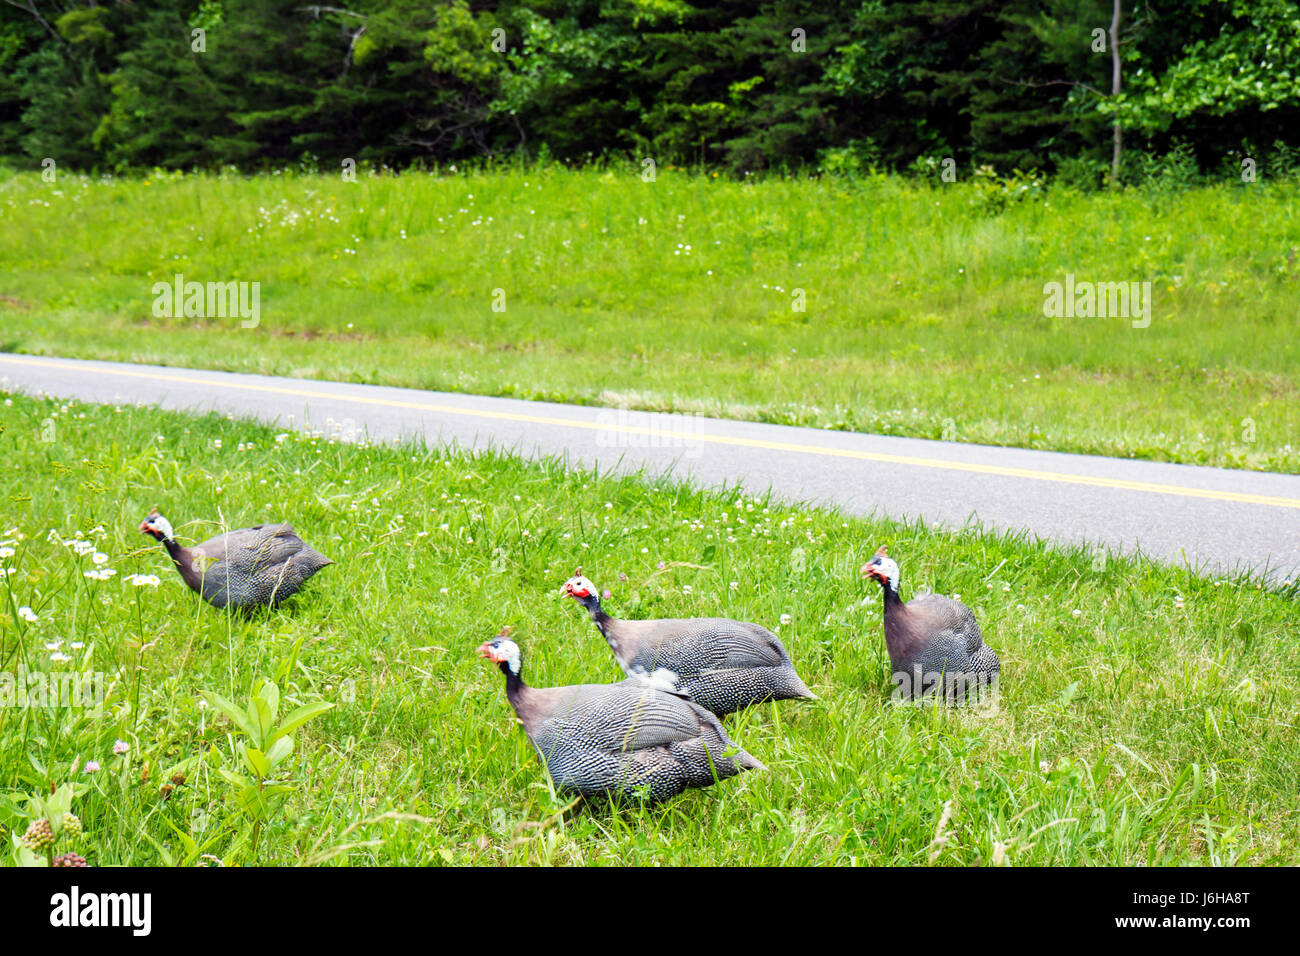 Blue Ridge Parkway Virginia, Appalachian Mountains, in der Nähe von Smart View, Perlhühner, Hühner, Vögel, Tiere, Straßen, Besucher reisen Reisetouristen Stockfoto